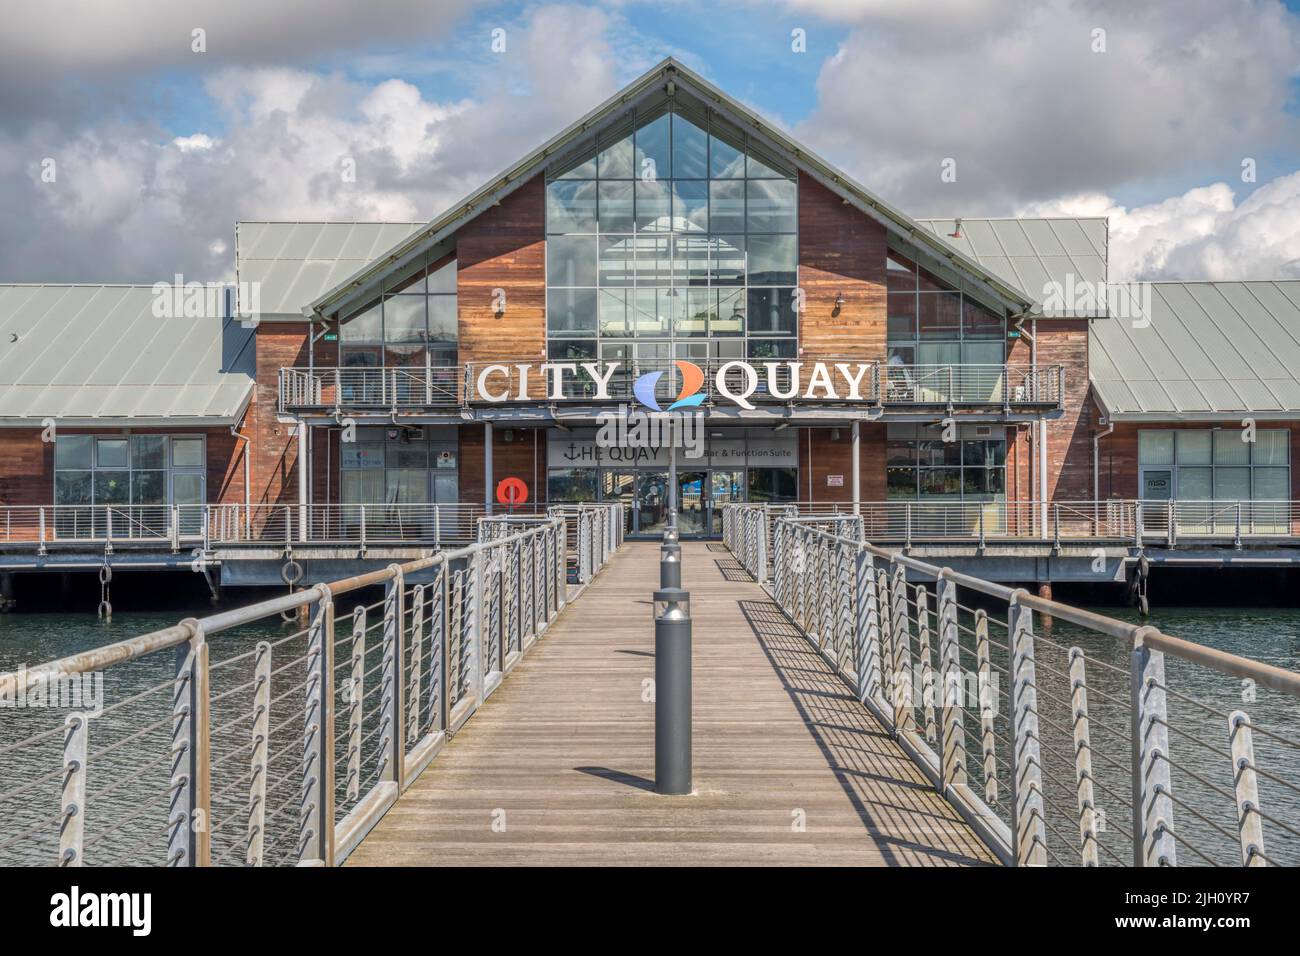 City Quay est un centre commercial, de loisirs et d'hôtel autour de l'ancien Victoria Quay à Dundee. Banque D'Images